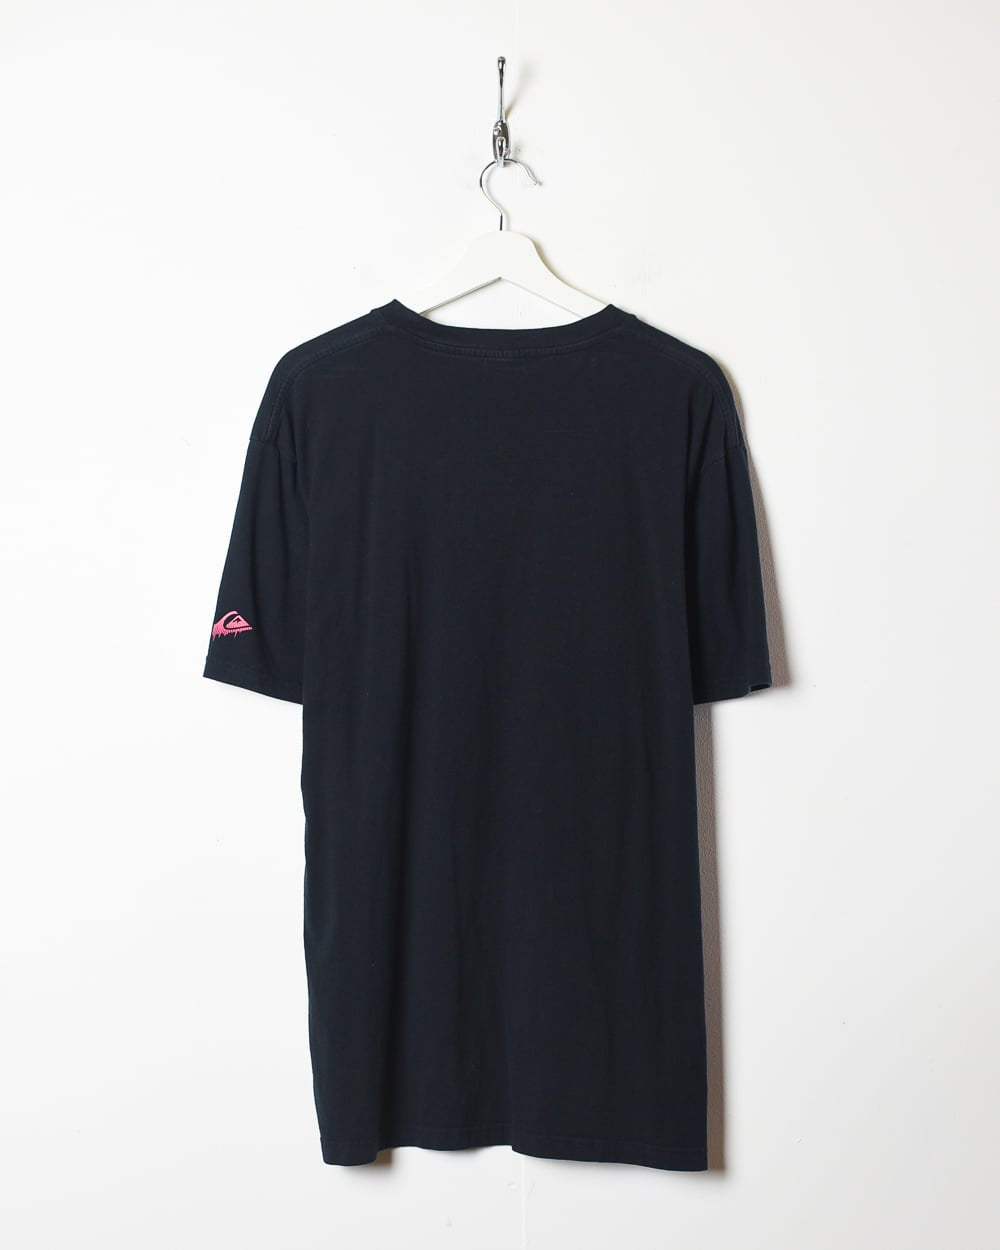 Black Quiksilver Graphic T-Shirt - X-Large